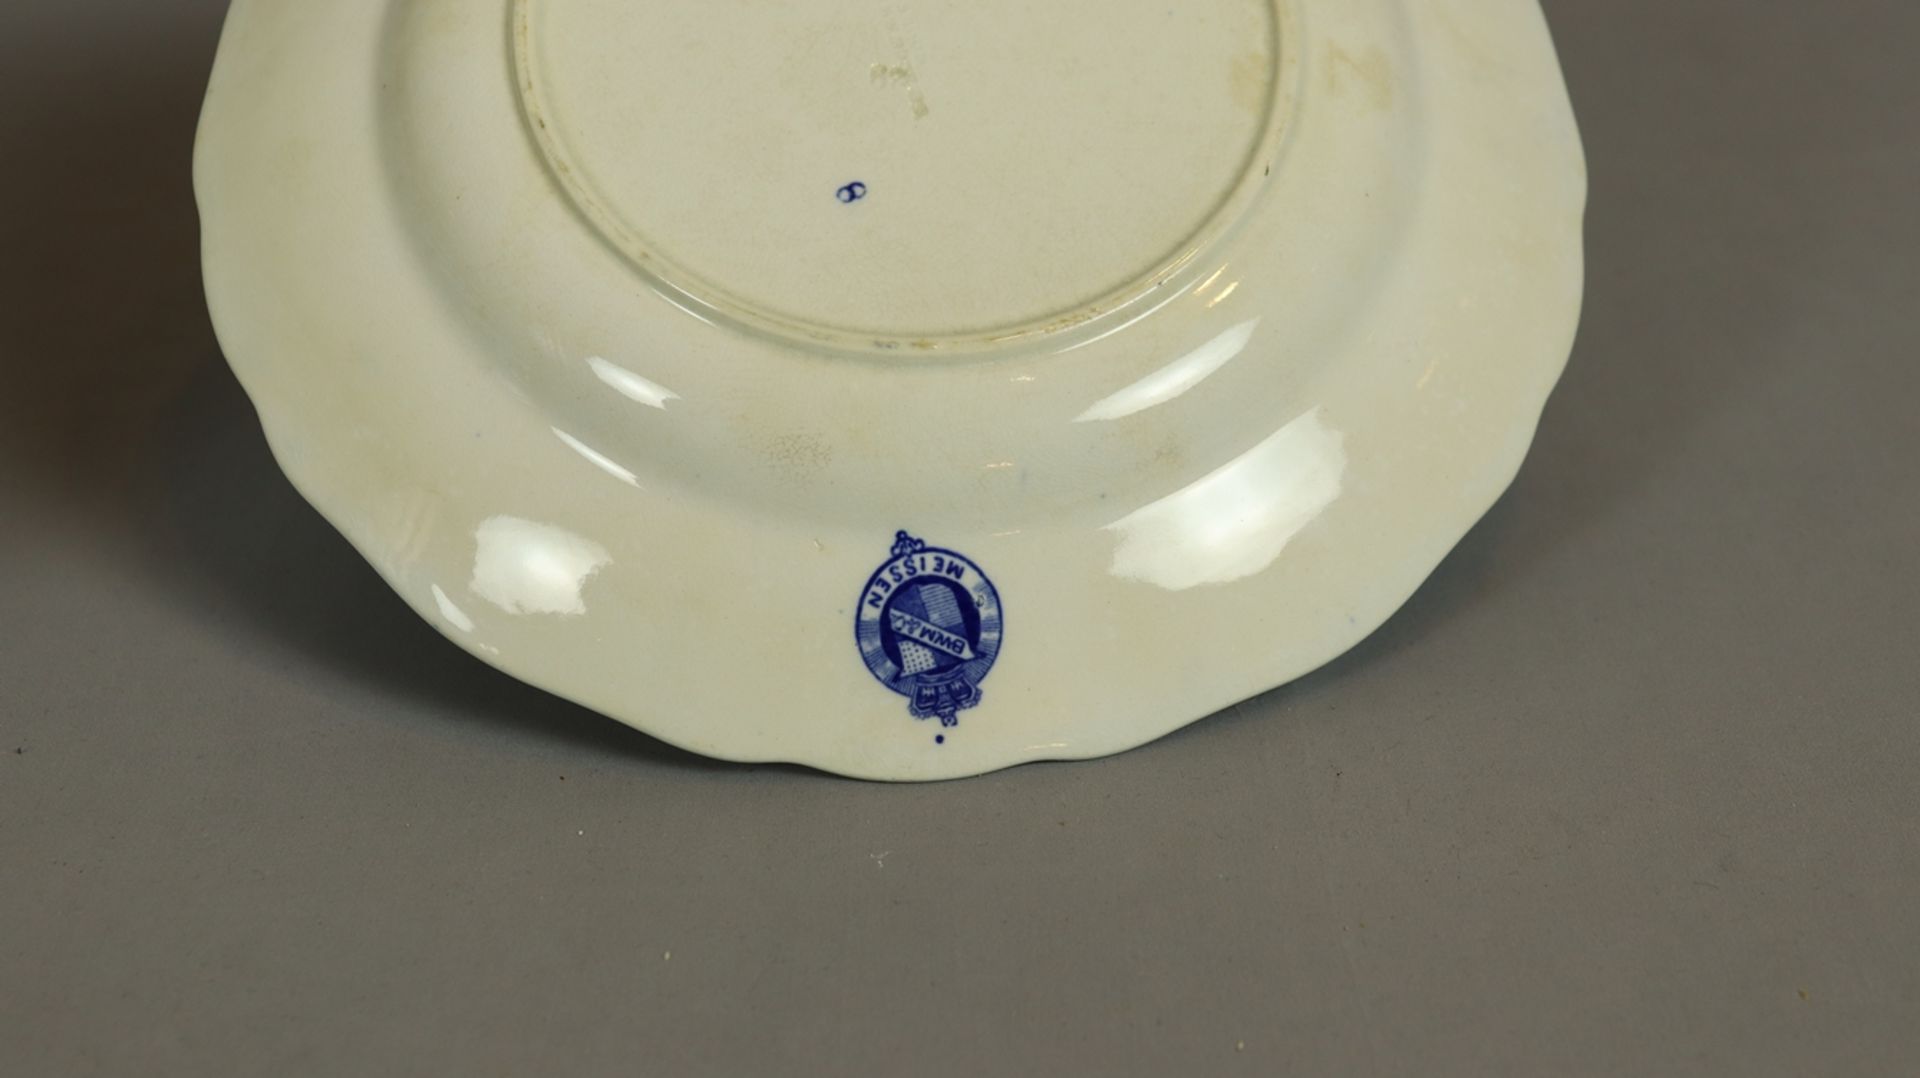 14 Essteller Zwiebelmuster Stadt Meißen, Keramik um 1900, weißer Scherben, blau weiß verziert, brei - Bild 2 aus 2